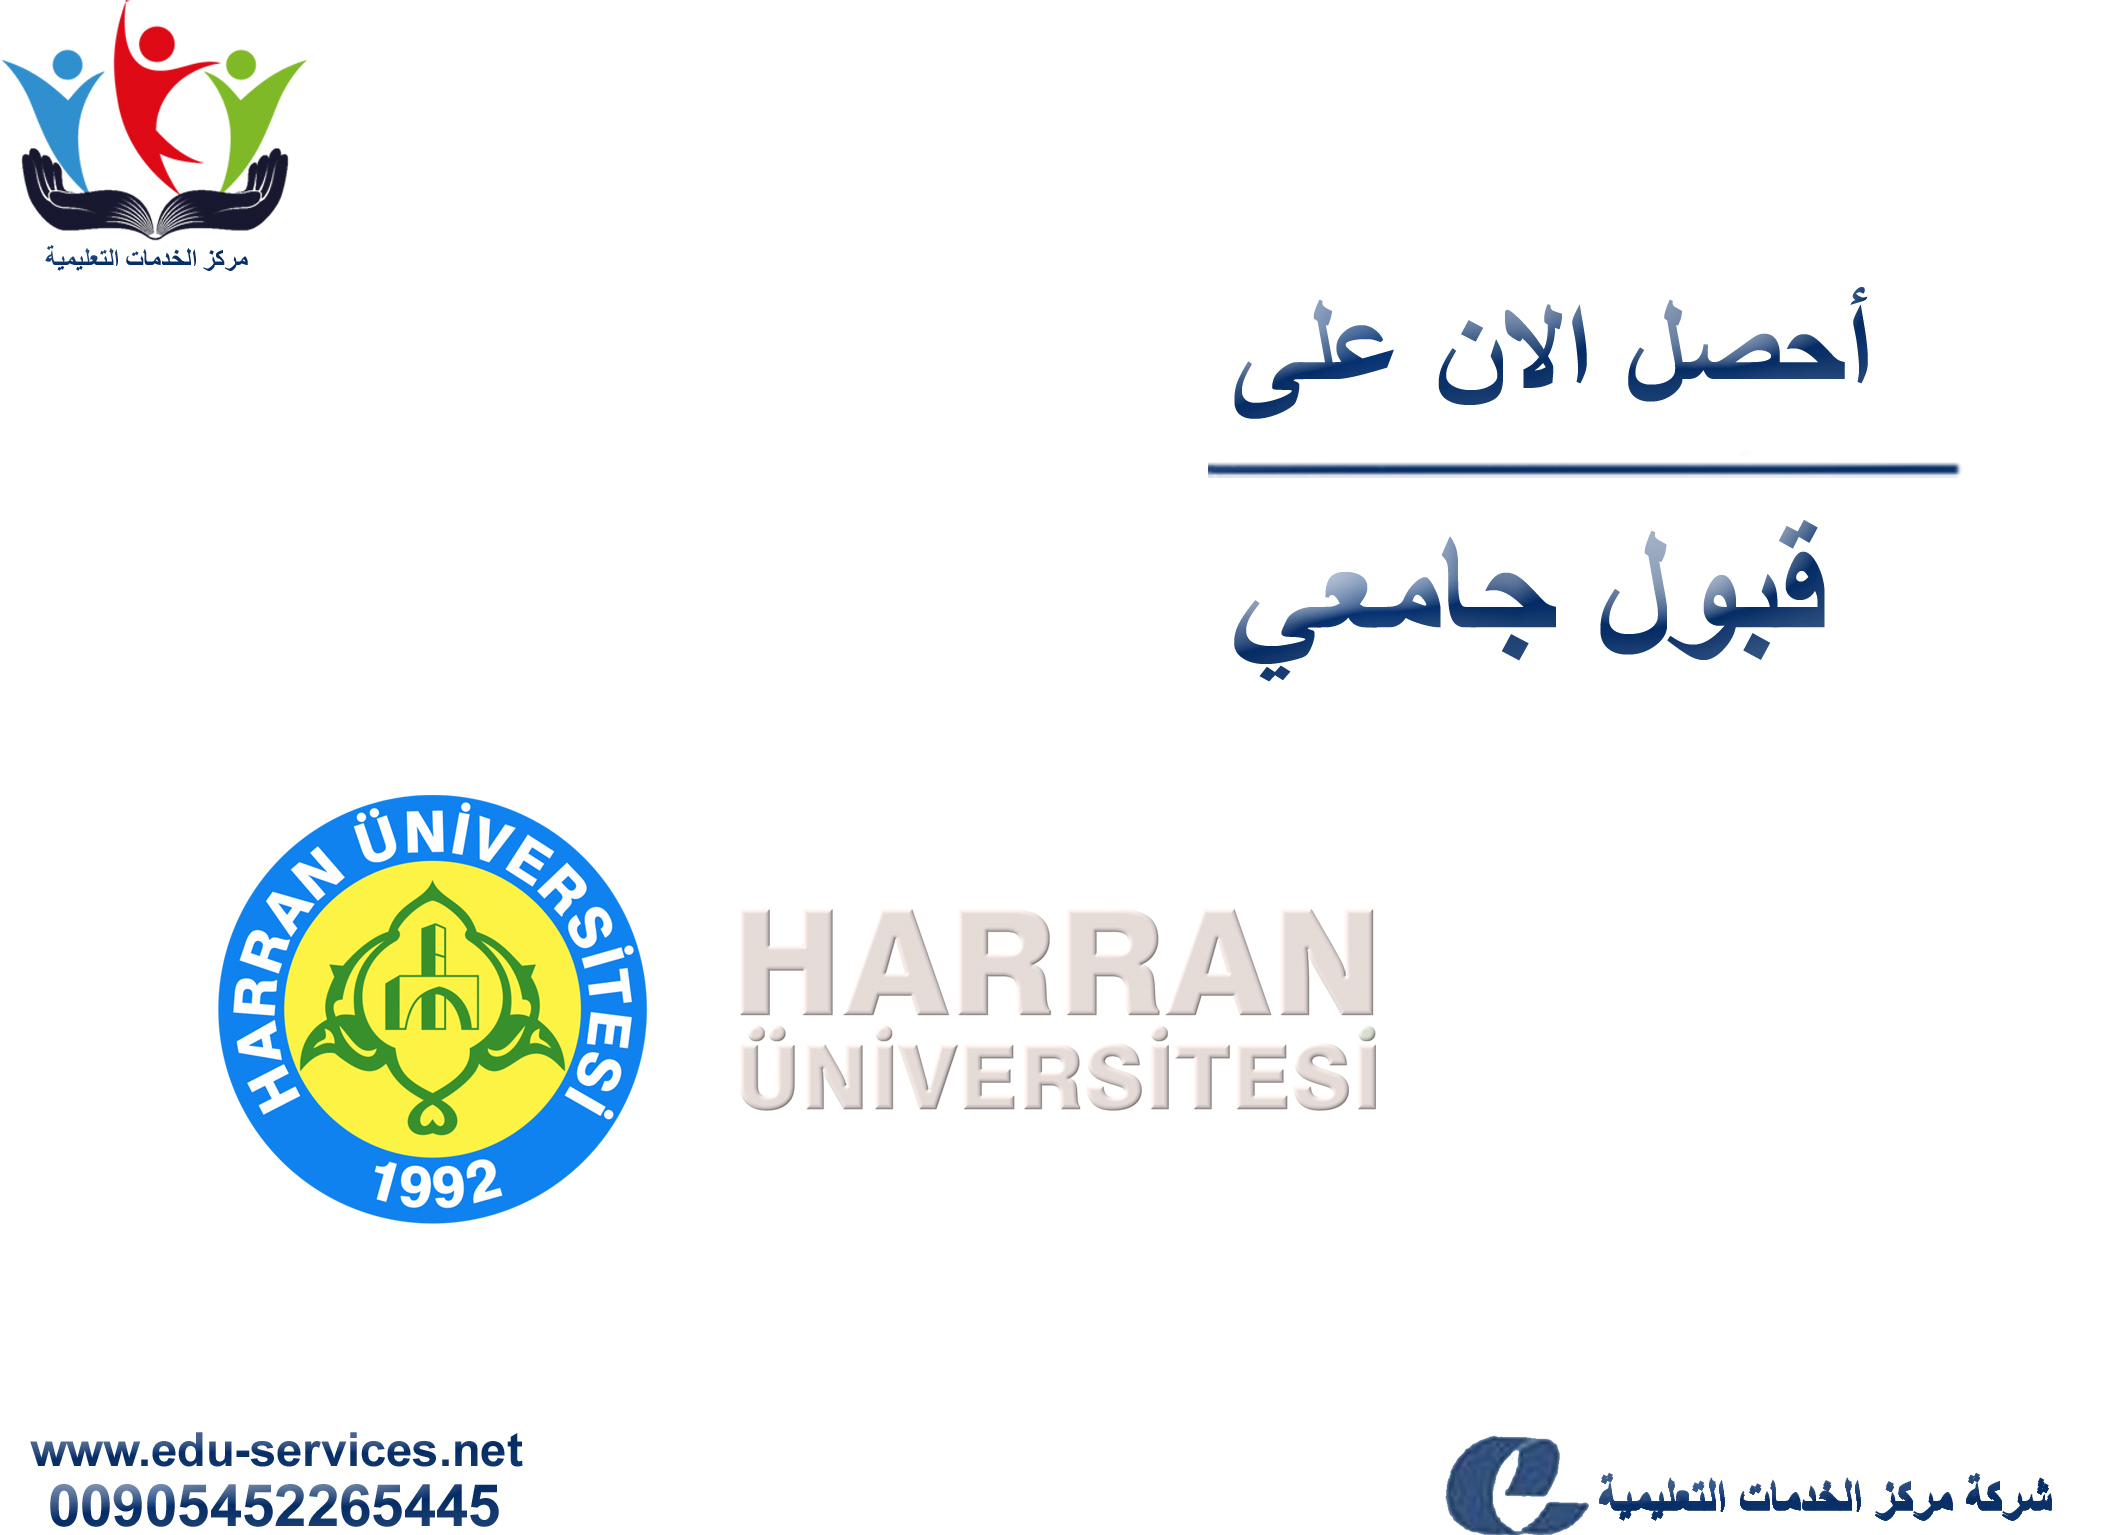 افتتاح التسجيل على جامعة حران لبرنامج الدراسات العليا للعام 2019-2020